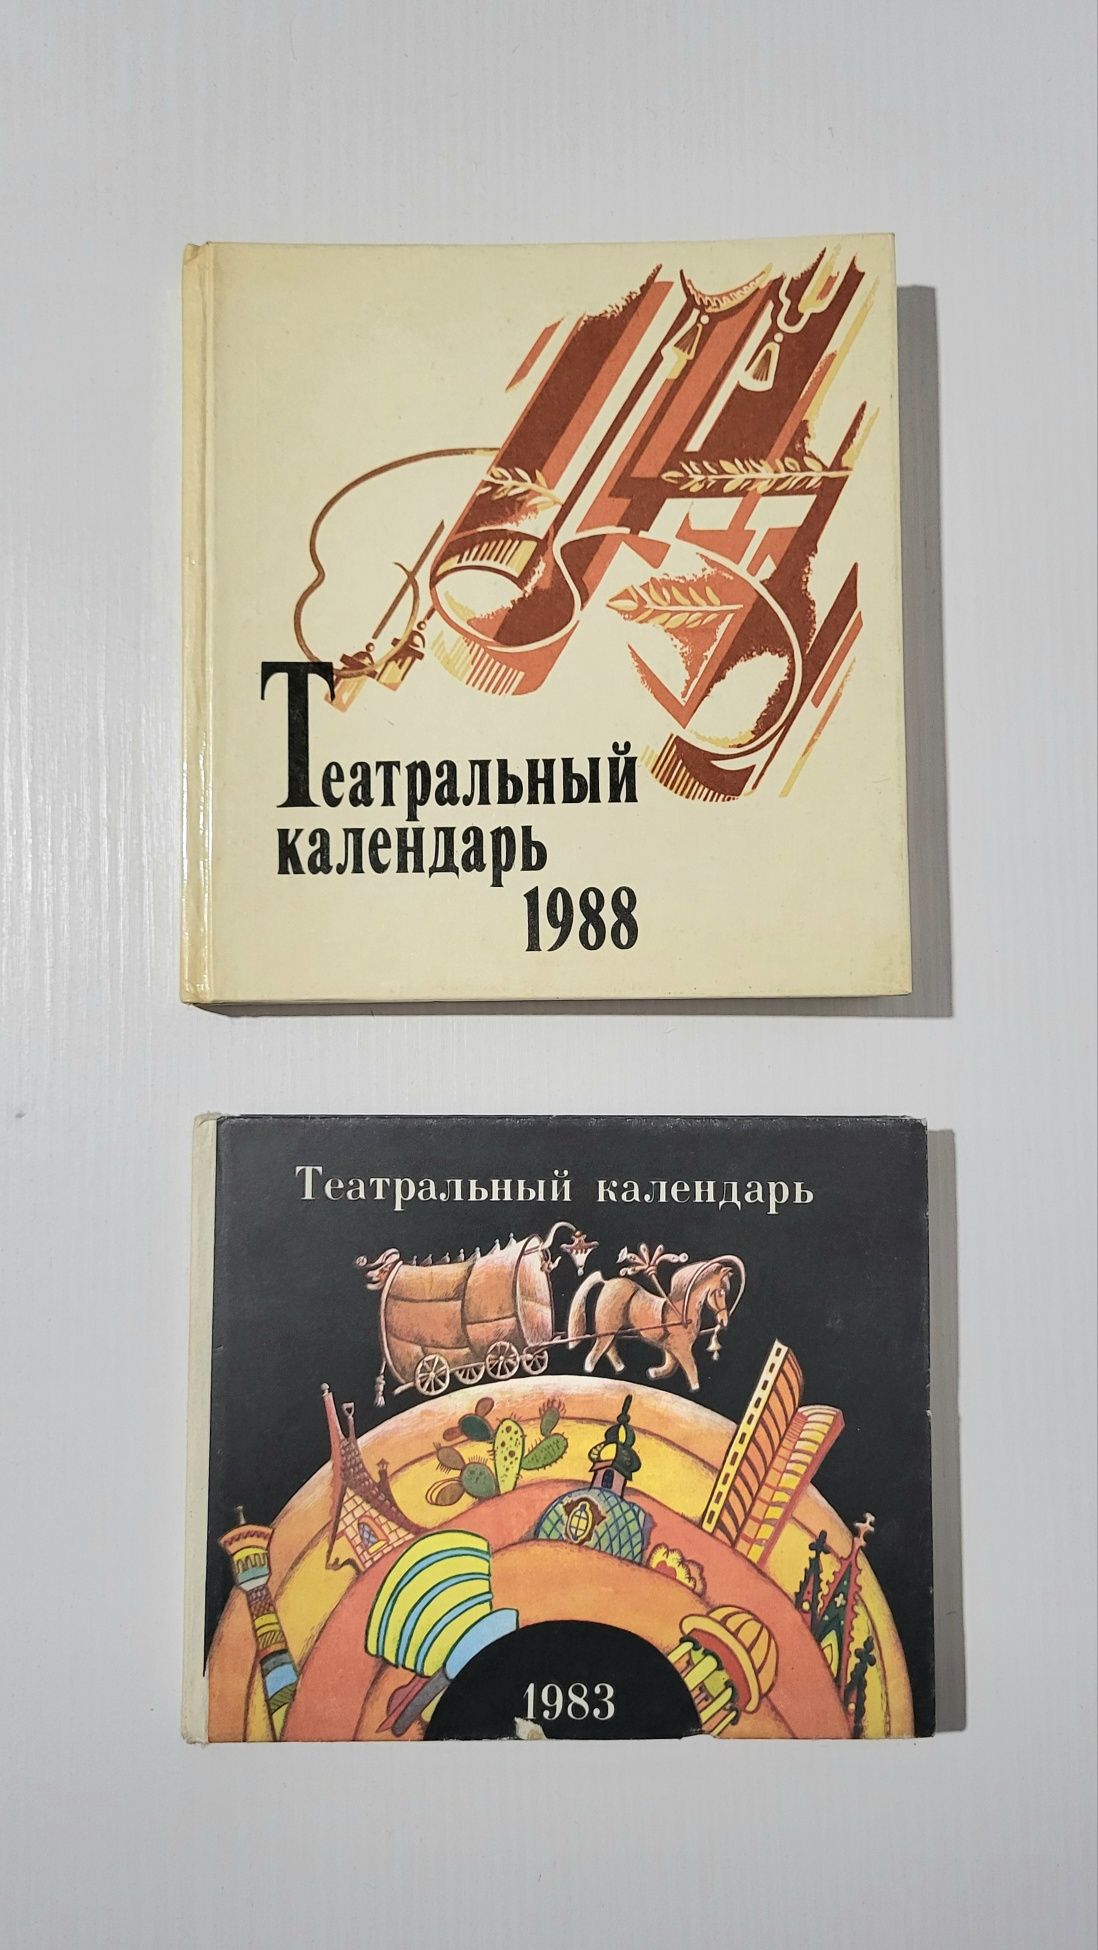 Театральные календари - 1983 и 1988 года